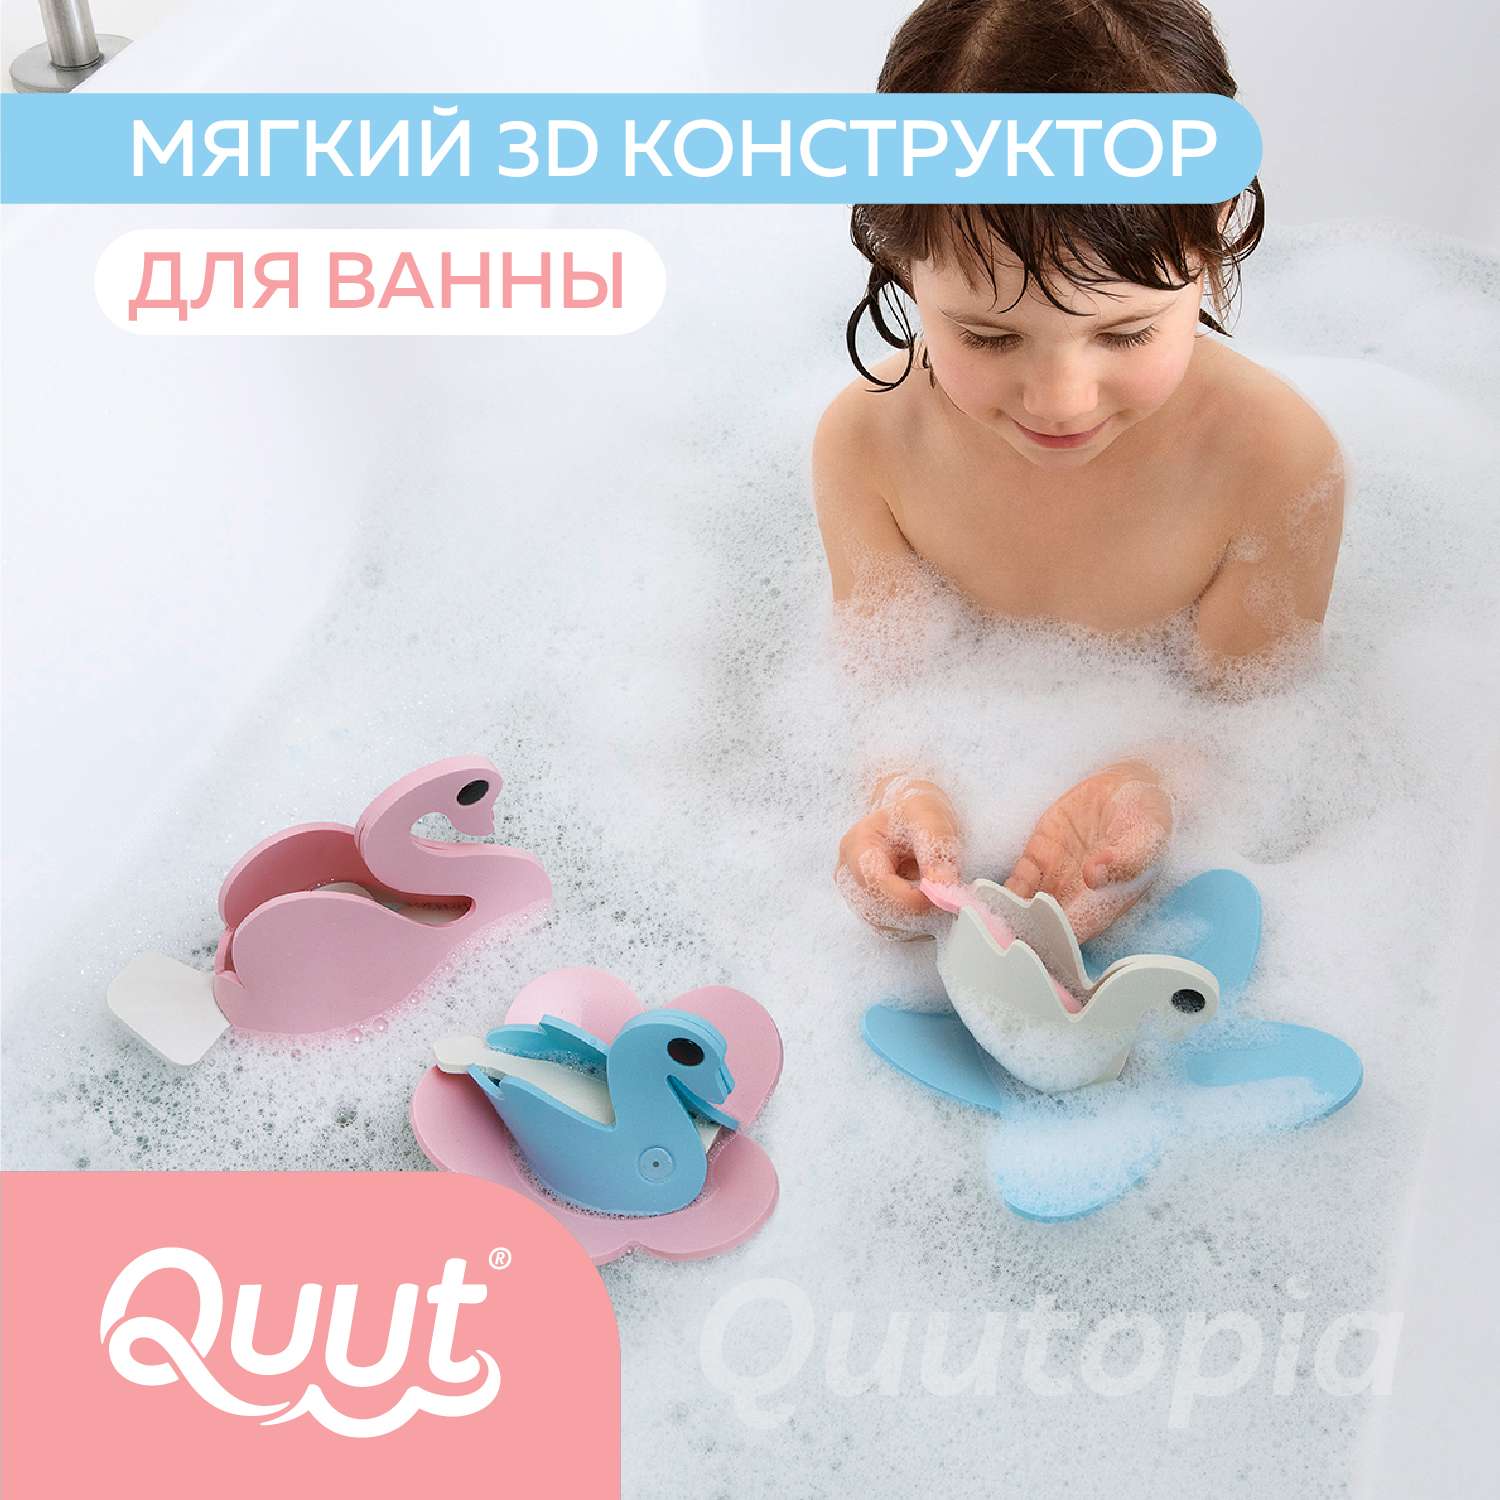 Конструктор 3D QUUT мягкий для игры в ванне Quutopia Лебединое озеро 6 элементов - фото 2